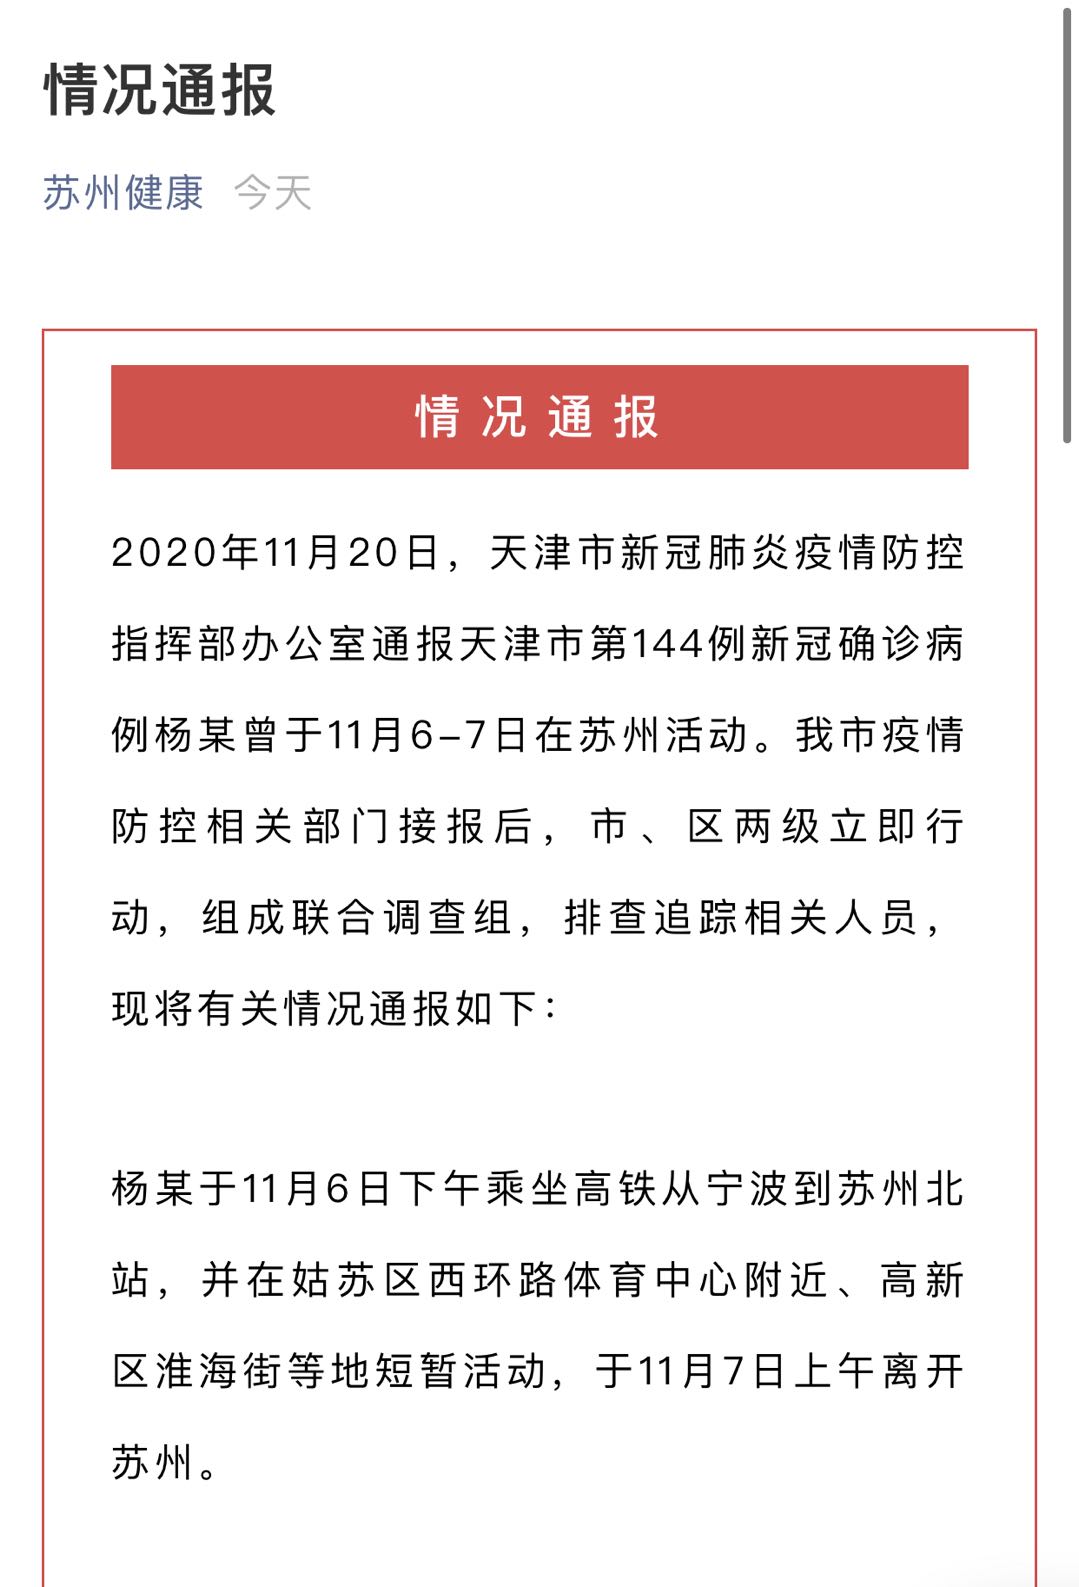 天津一新冠肺炎确诊病例曾在苏州活动 已排查追踪相关人员127人